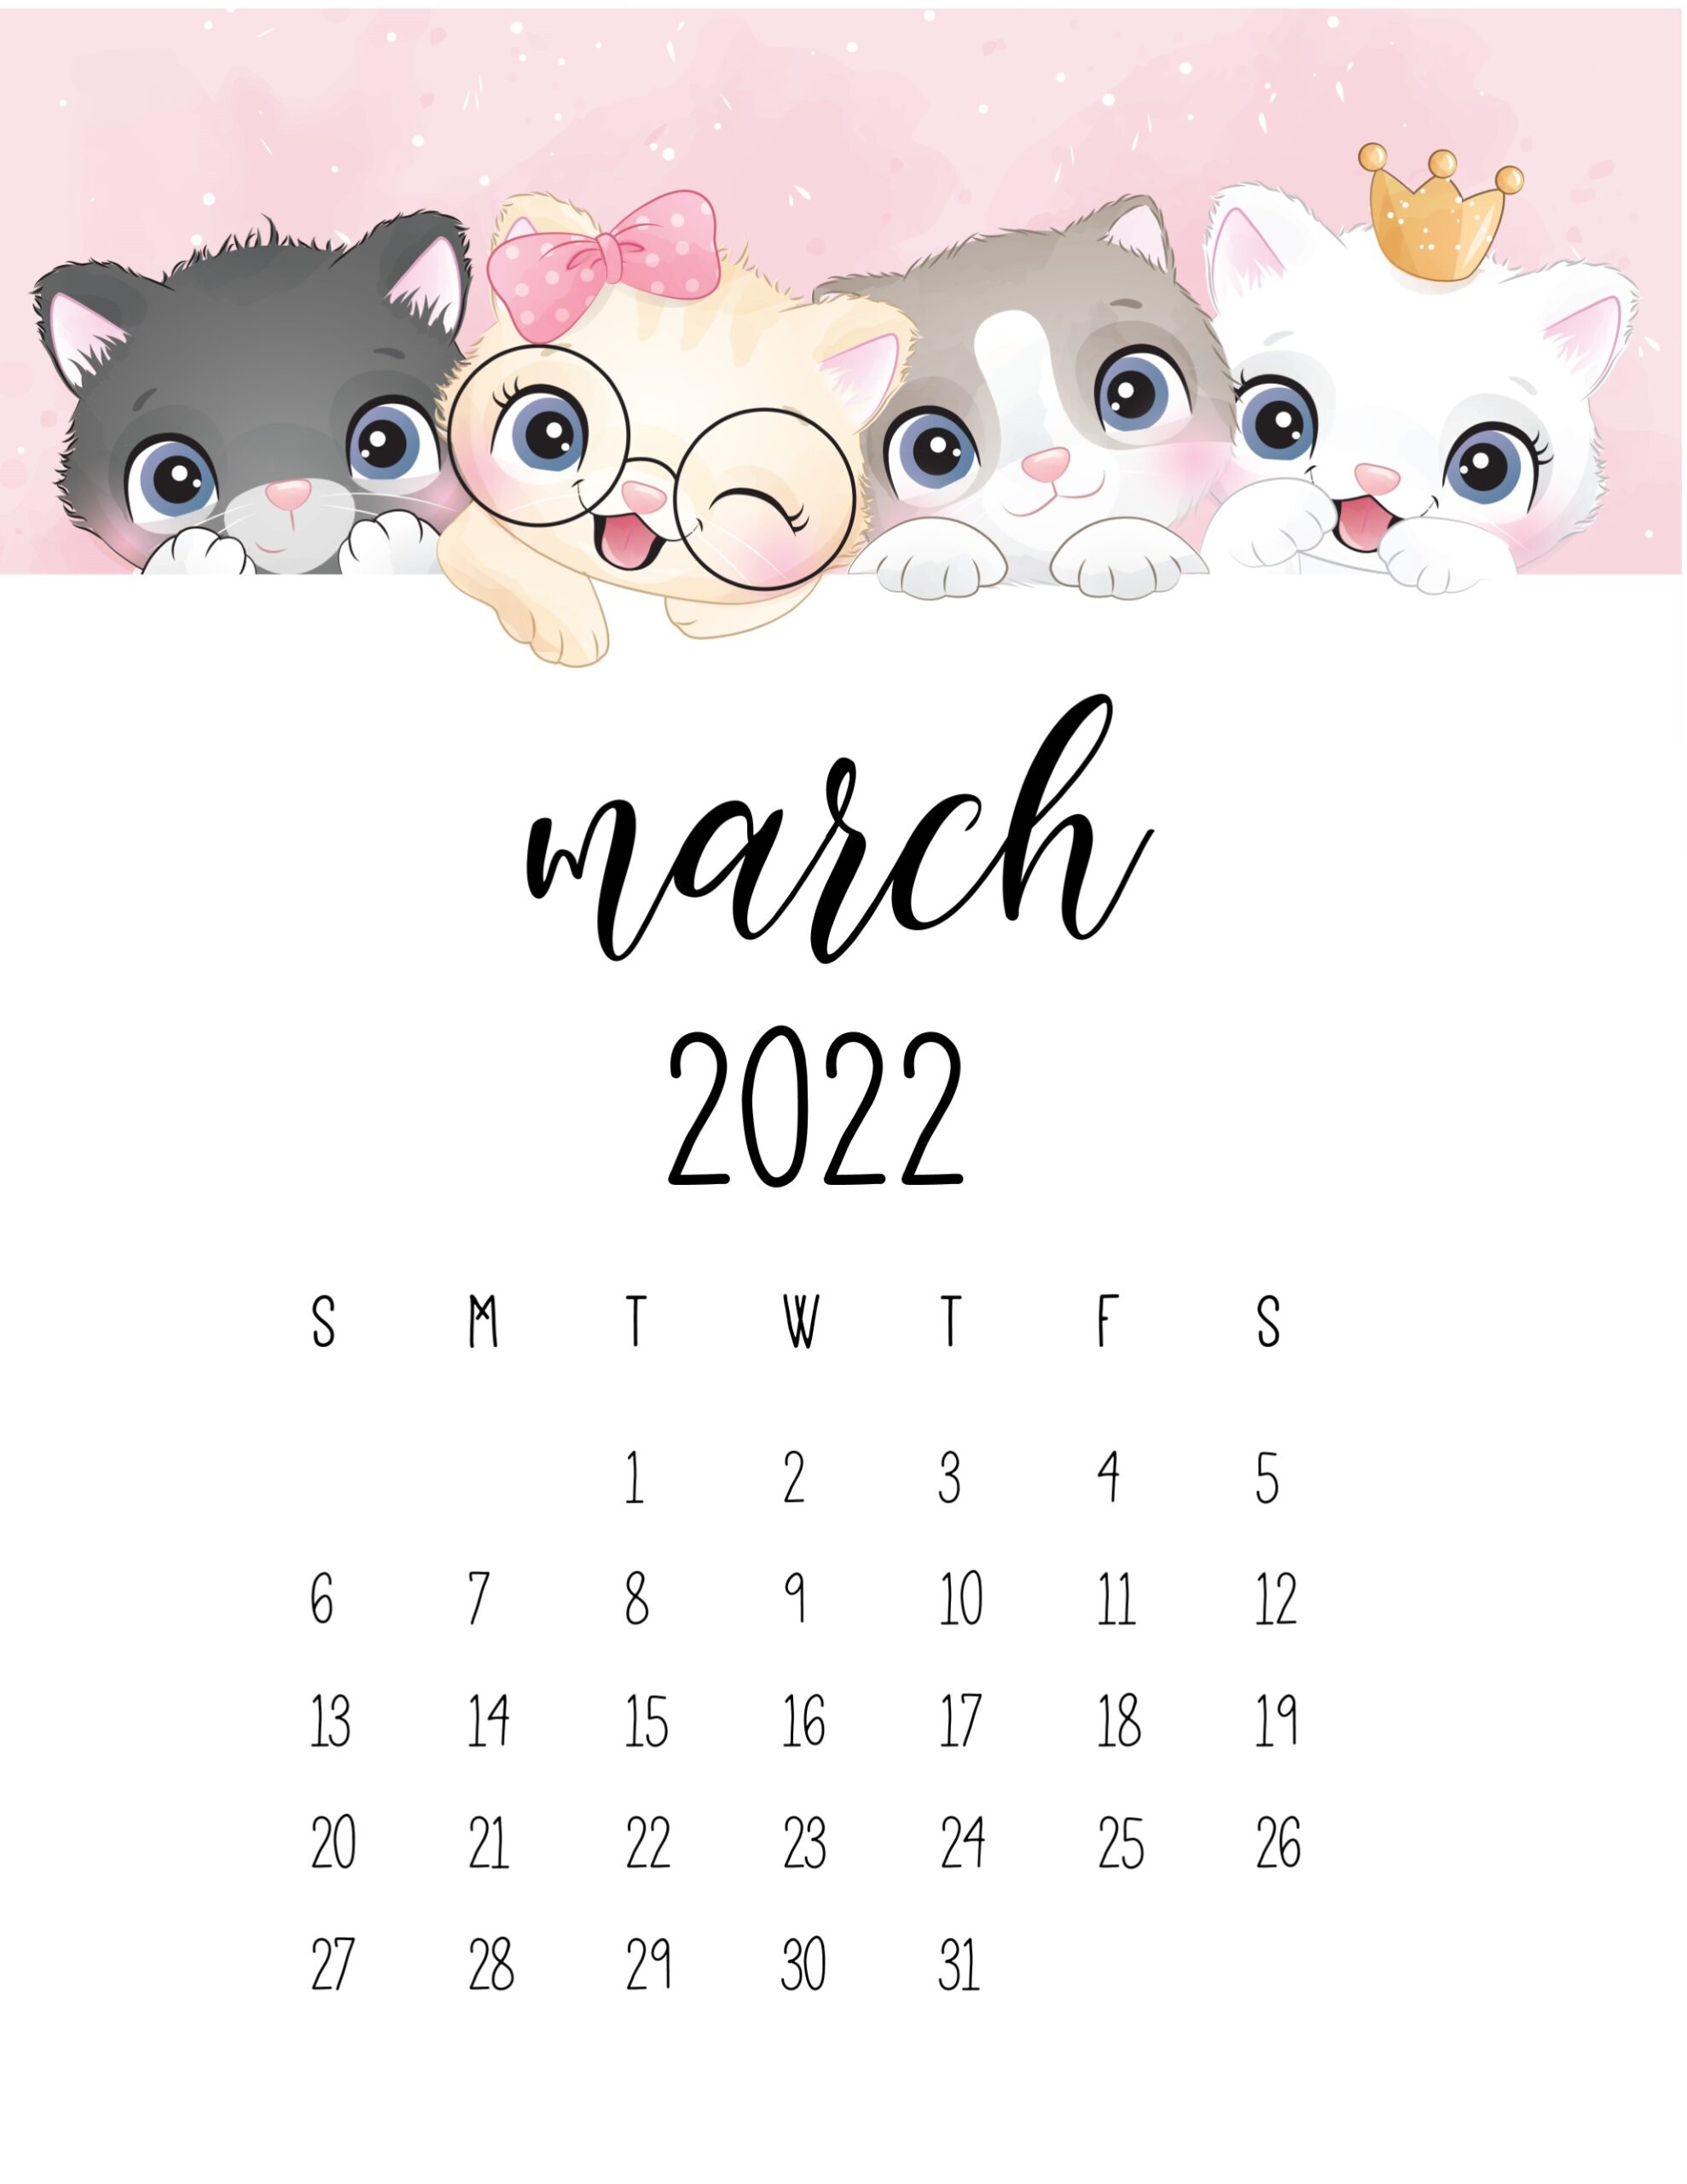 calendario 2022 gatinhos marco 1